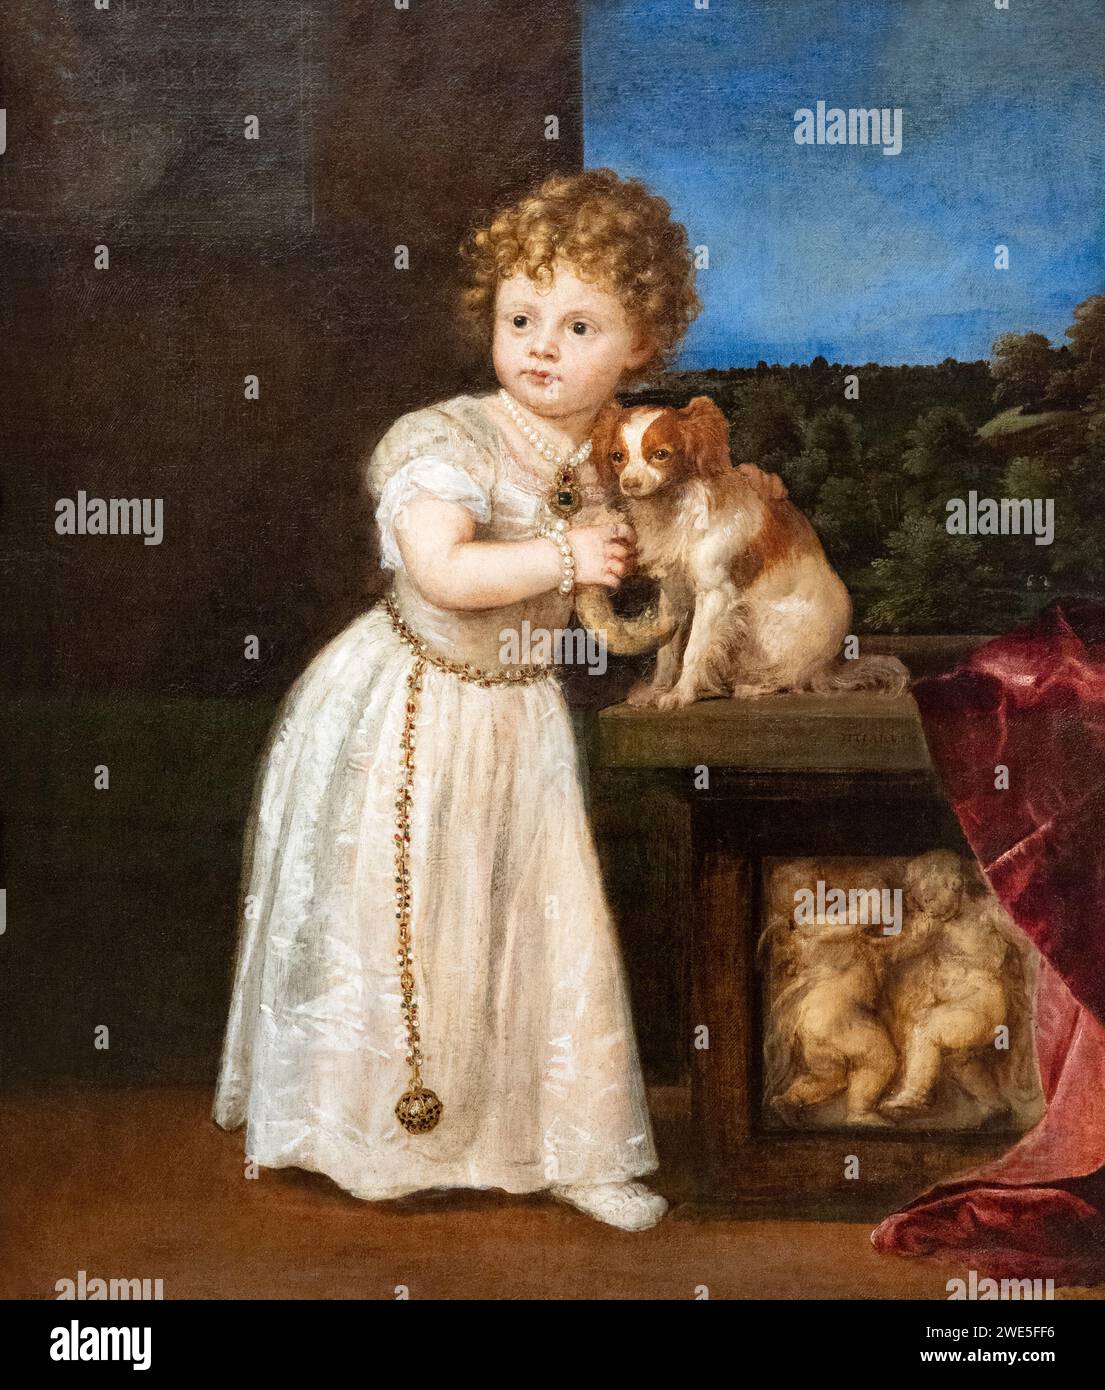 Peinture Titienne ; 'Clarissa Strozzi à l'âge de deux ans', 1542 ; Portrait de la Renaissance italienne, l'un des premiers portraits d'un enfant. 16e siècle. Banque D'Images